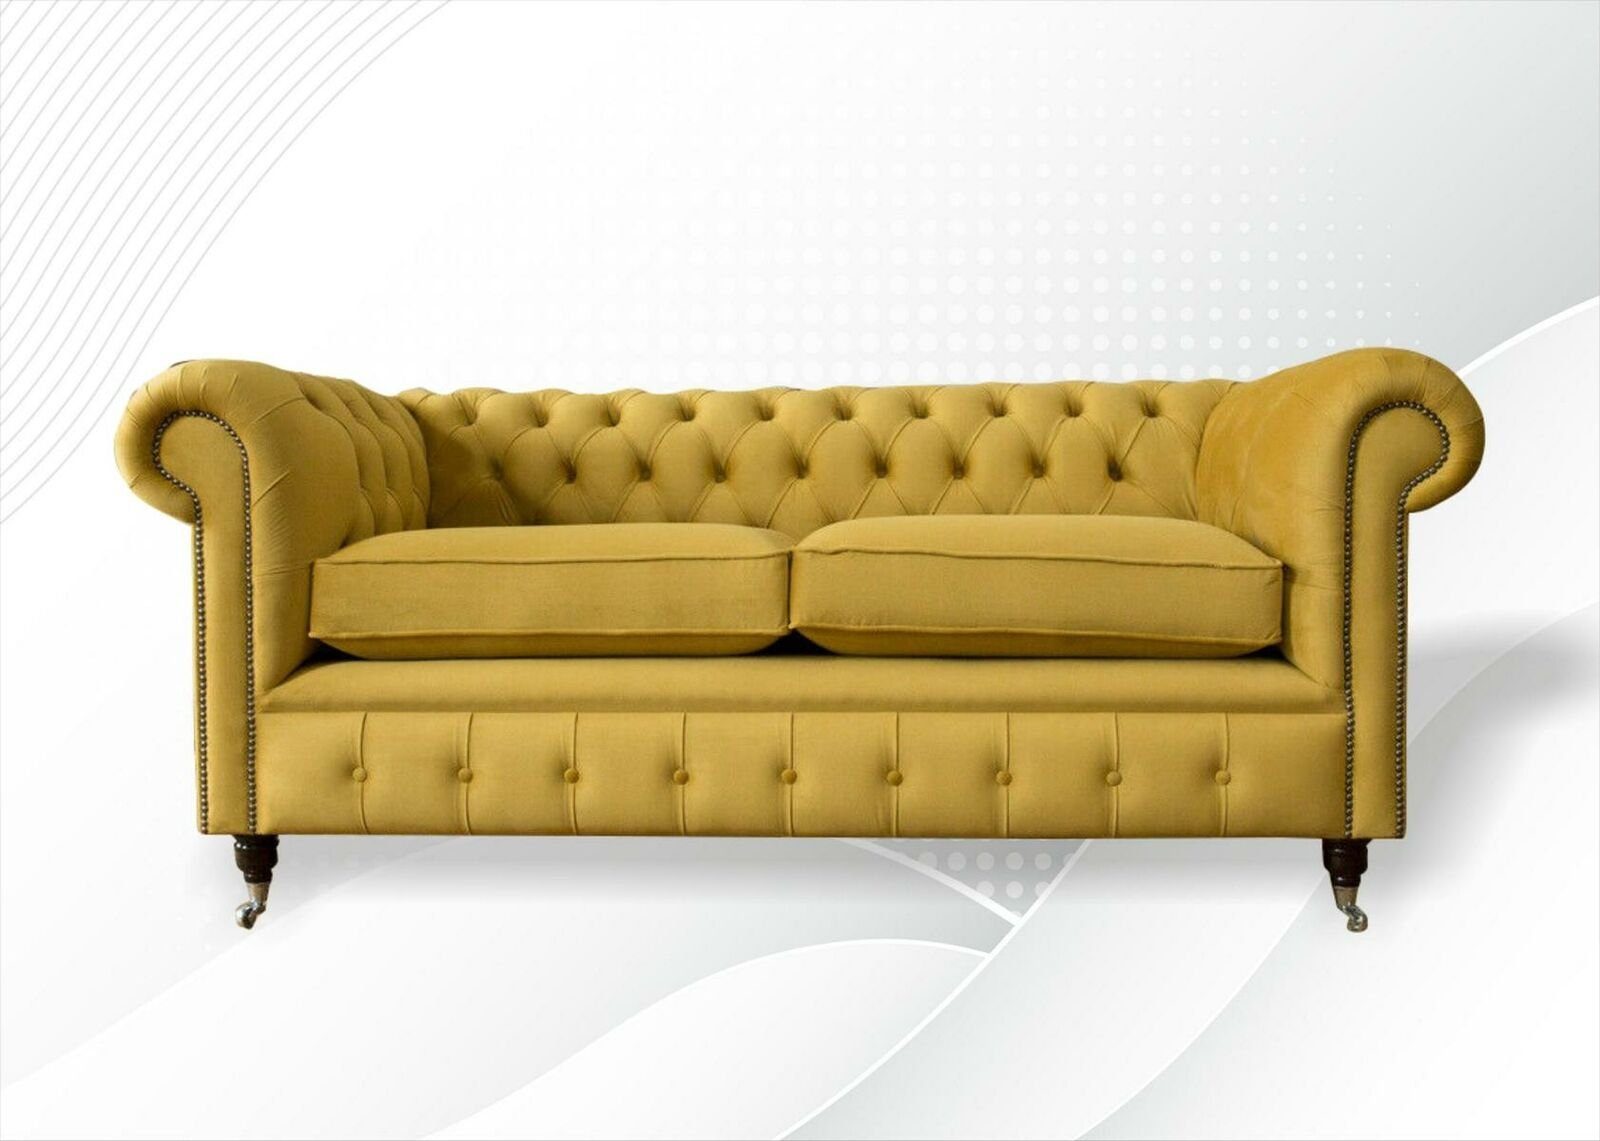 JVmoebel Chesterfield-Sofa, Chesterfield Gelb Sofa Wohnzimmer Design Couchen Polster Sofas Neu Gelbe xxl big